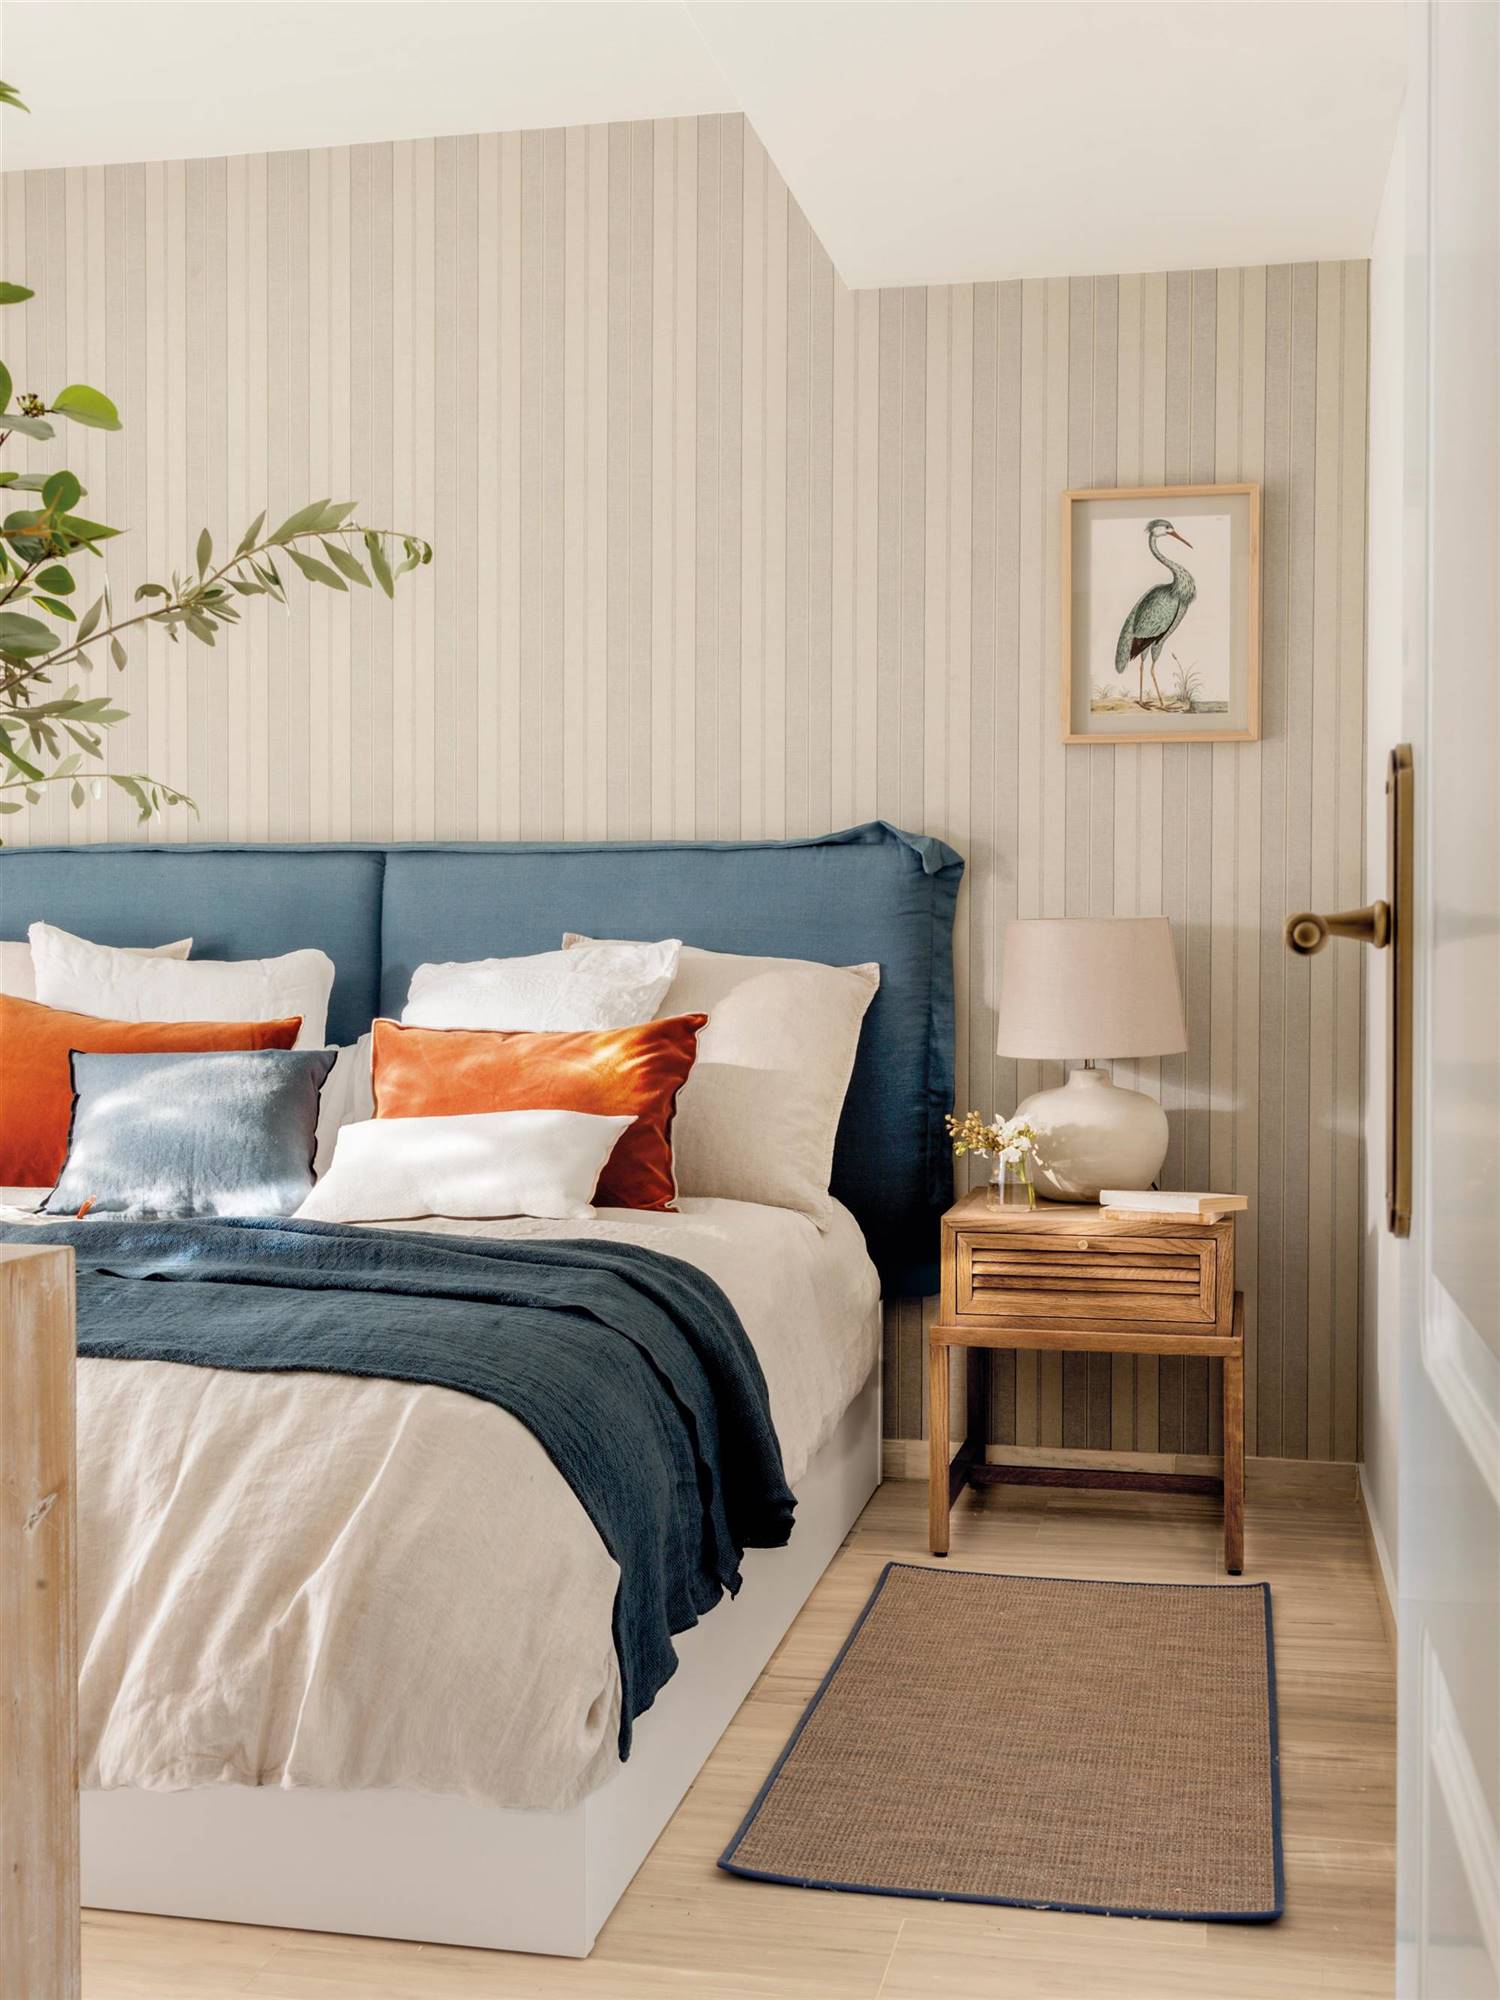 Dormitorio con cabecero tapizado en azul y papel pintado de rayas.